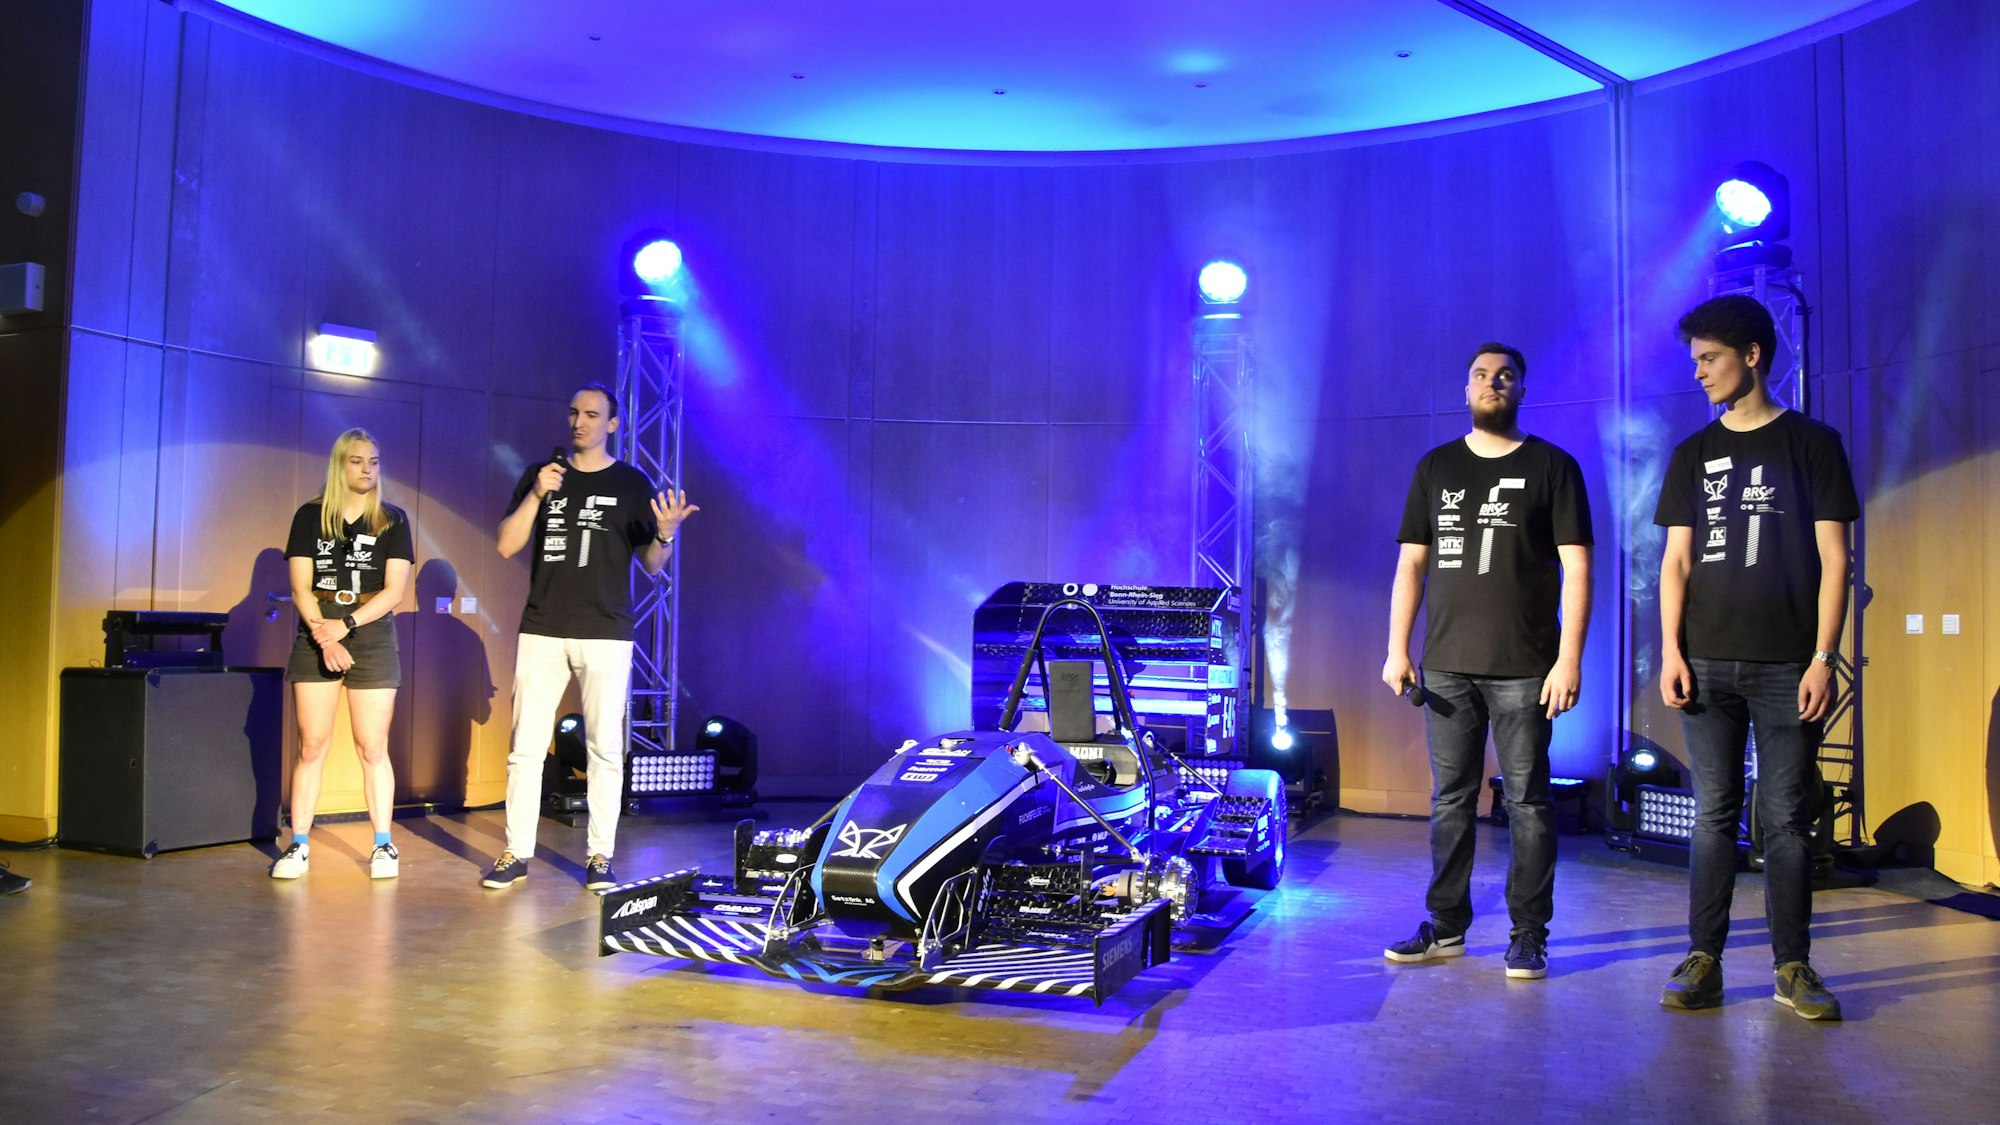 Rollout des neuen Rennwagens der Hochschule Bonn-Rhein-Sieg: Experten erklären die neu entwickelten Bauteile. Drei Männer und eine Frau stehen neben dem Rennwagen auf der Bühne.